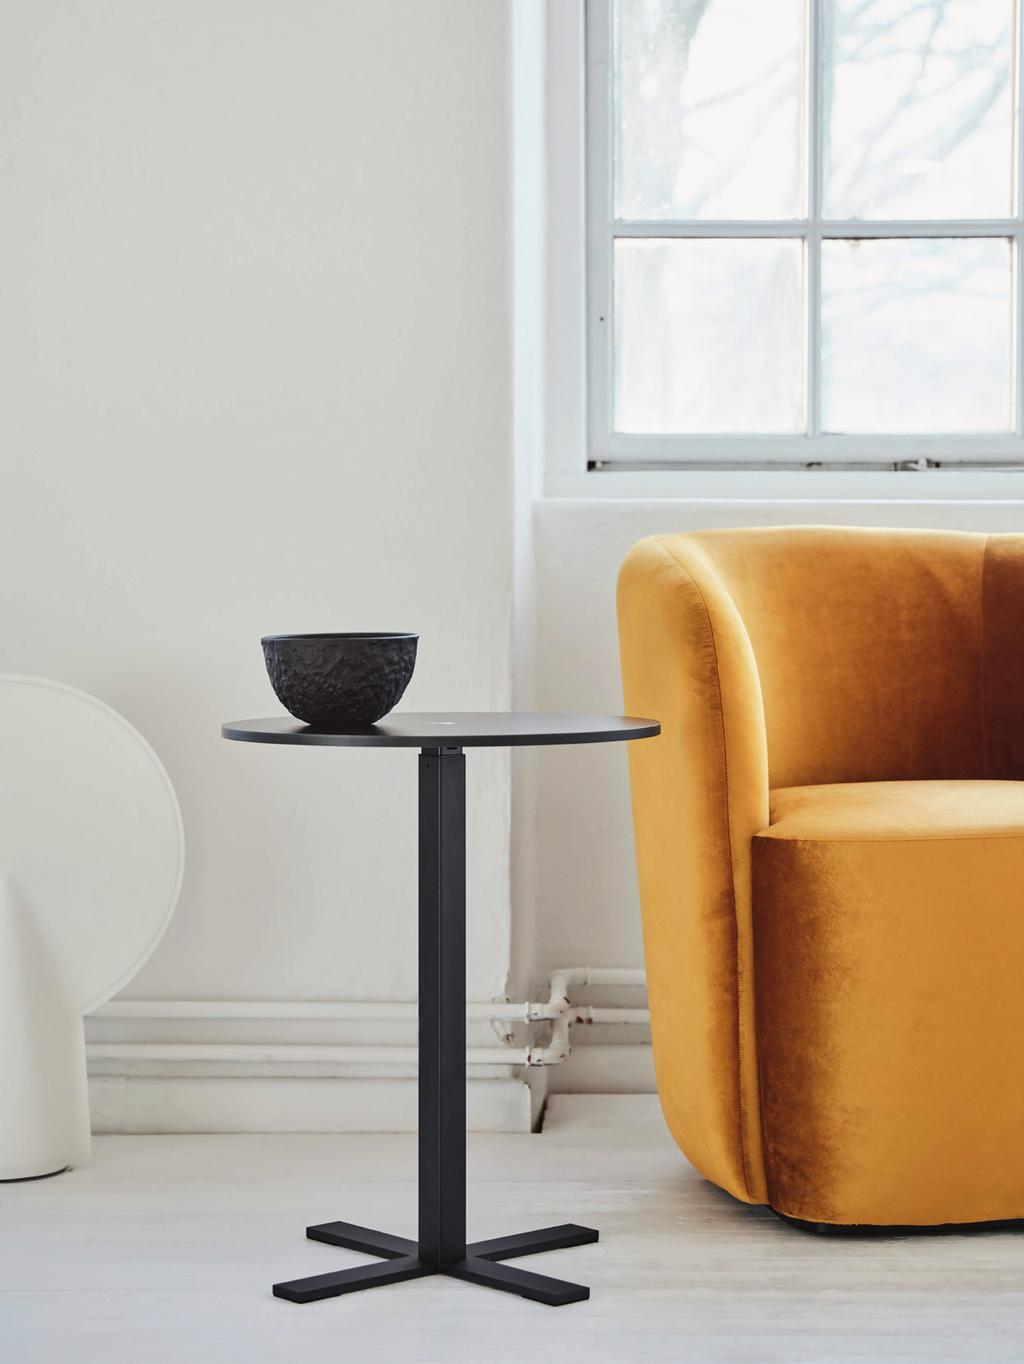 LOUNGE ENPELARSTATIV Höj- och sänkbara stativ för loungebord som går att både stå och sitta vid. Finns i olika varianter för olika bordsstorlekar.